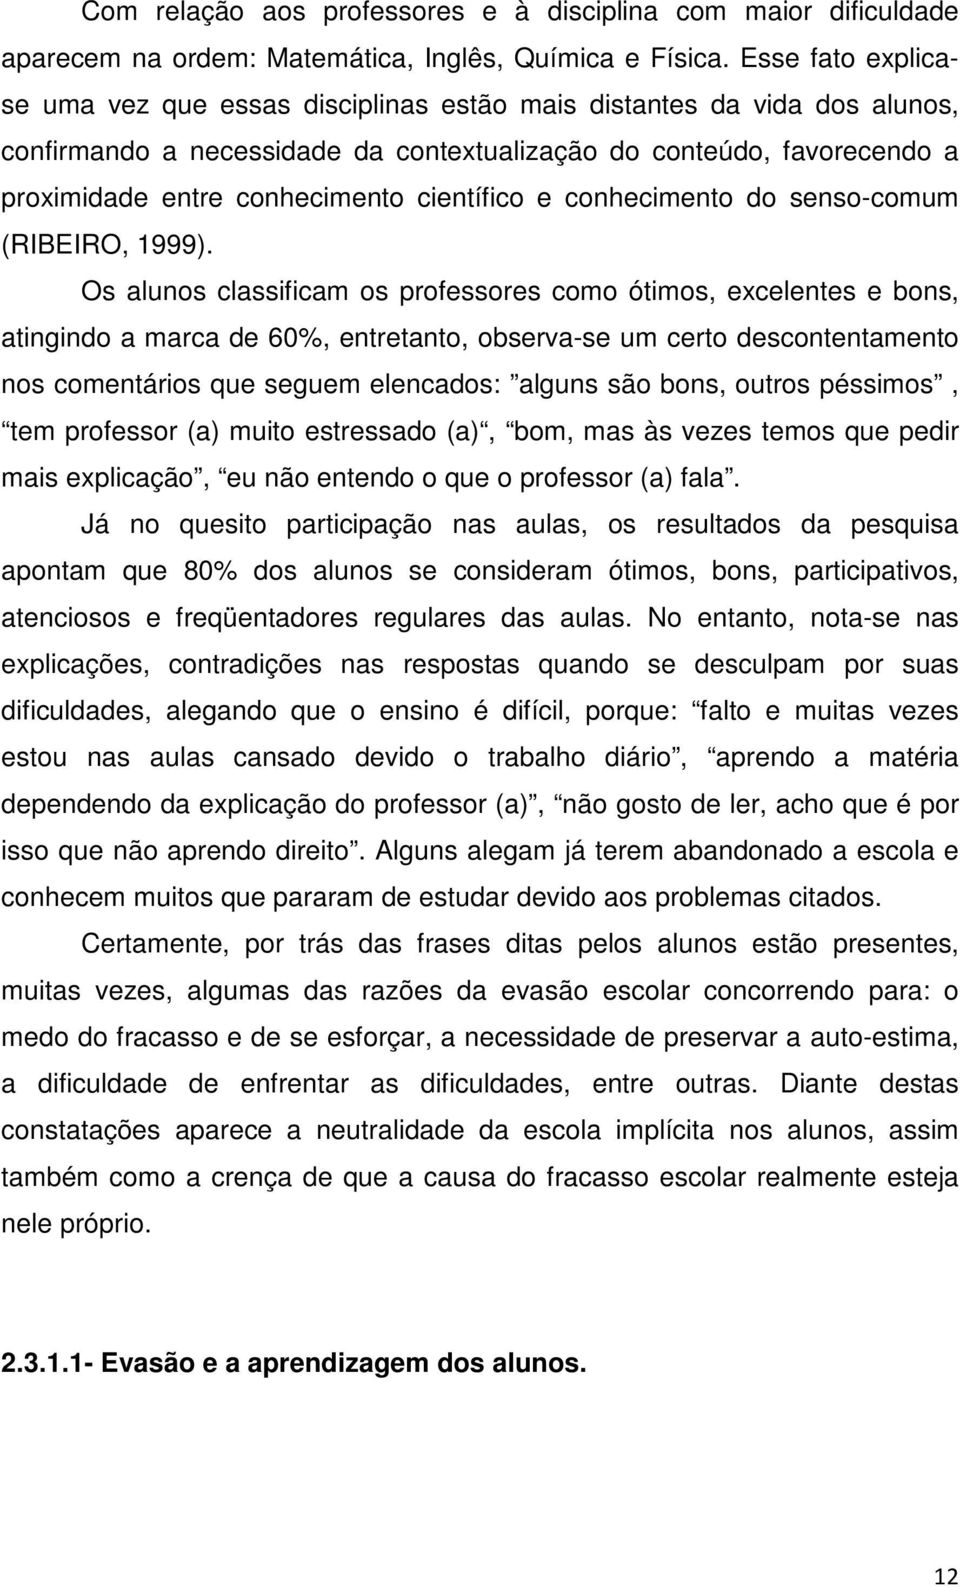 científico e conhecimento do senso-comum (RIBEIRO, 1999).